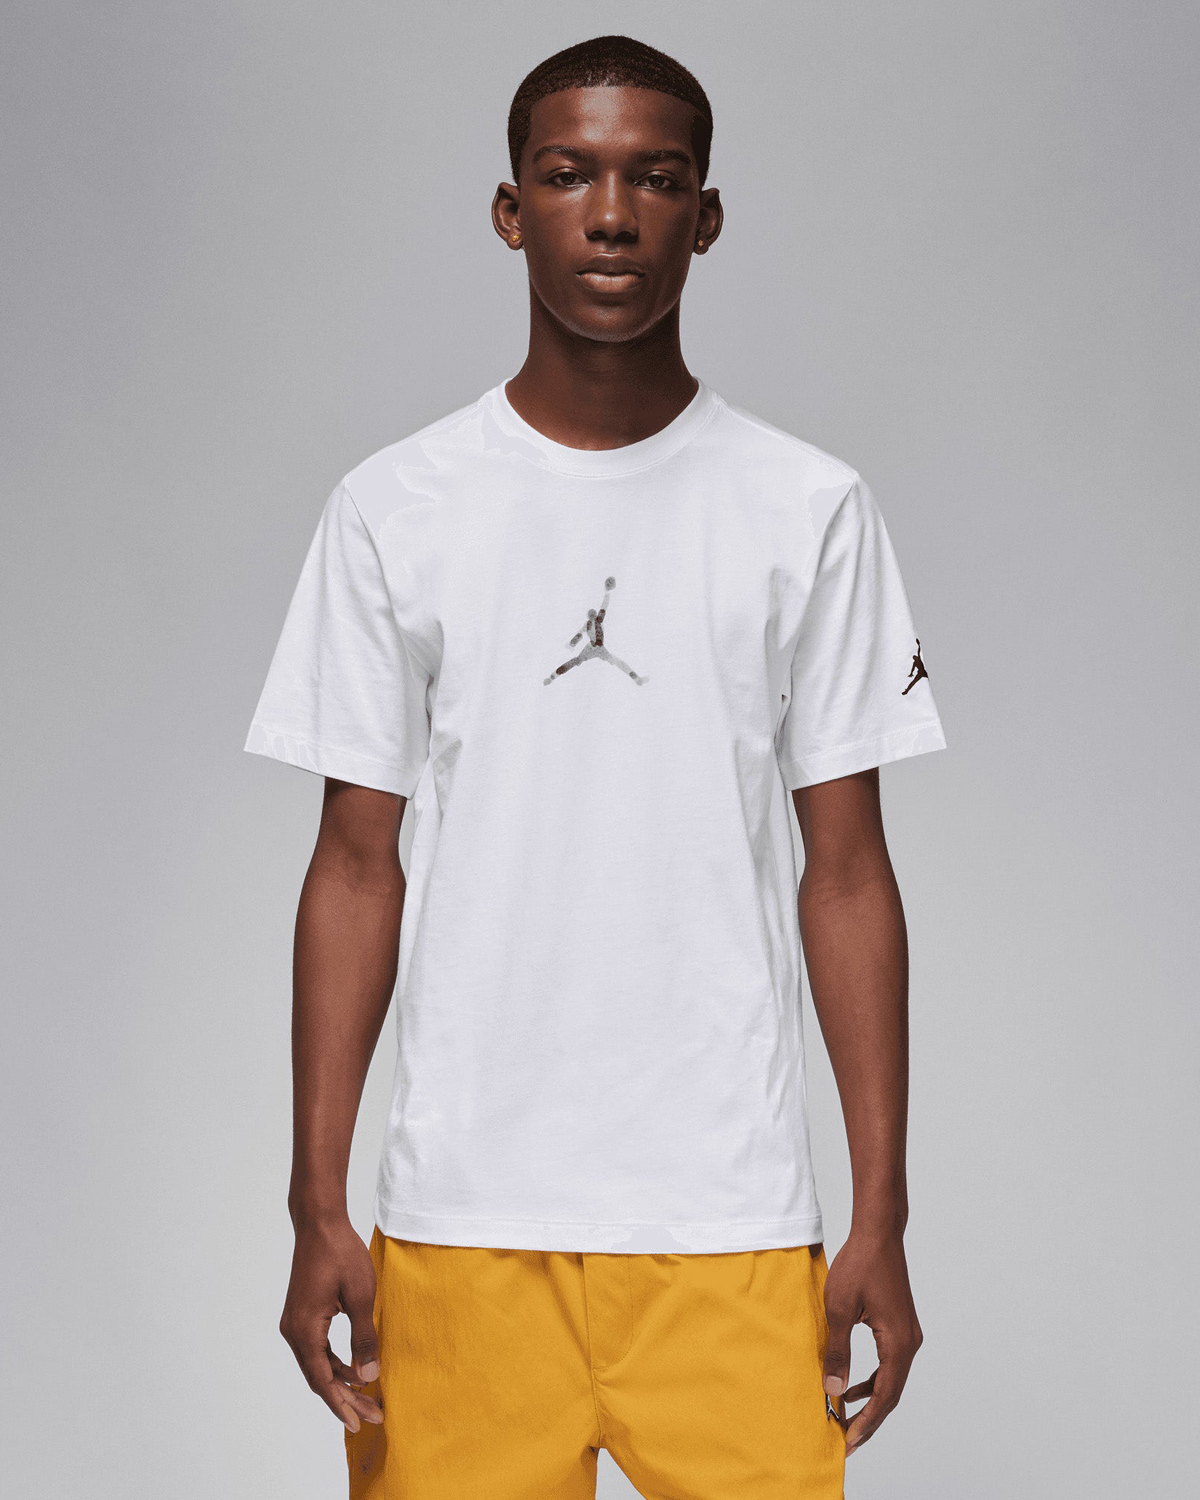 Air Jordan 1 High OG Yellow Ochre Shirt to Match